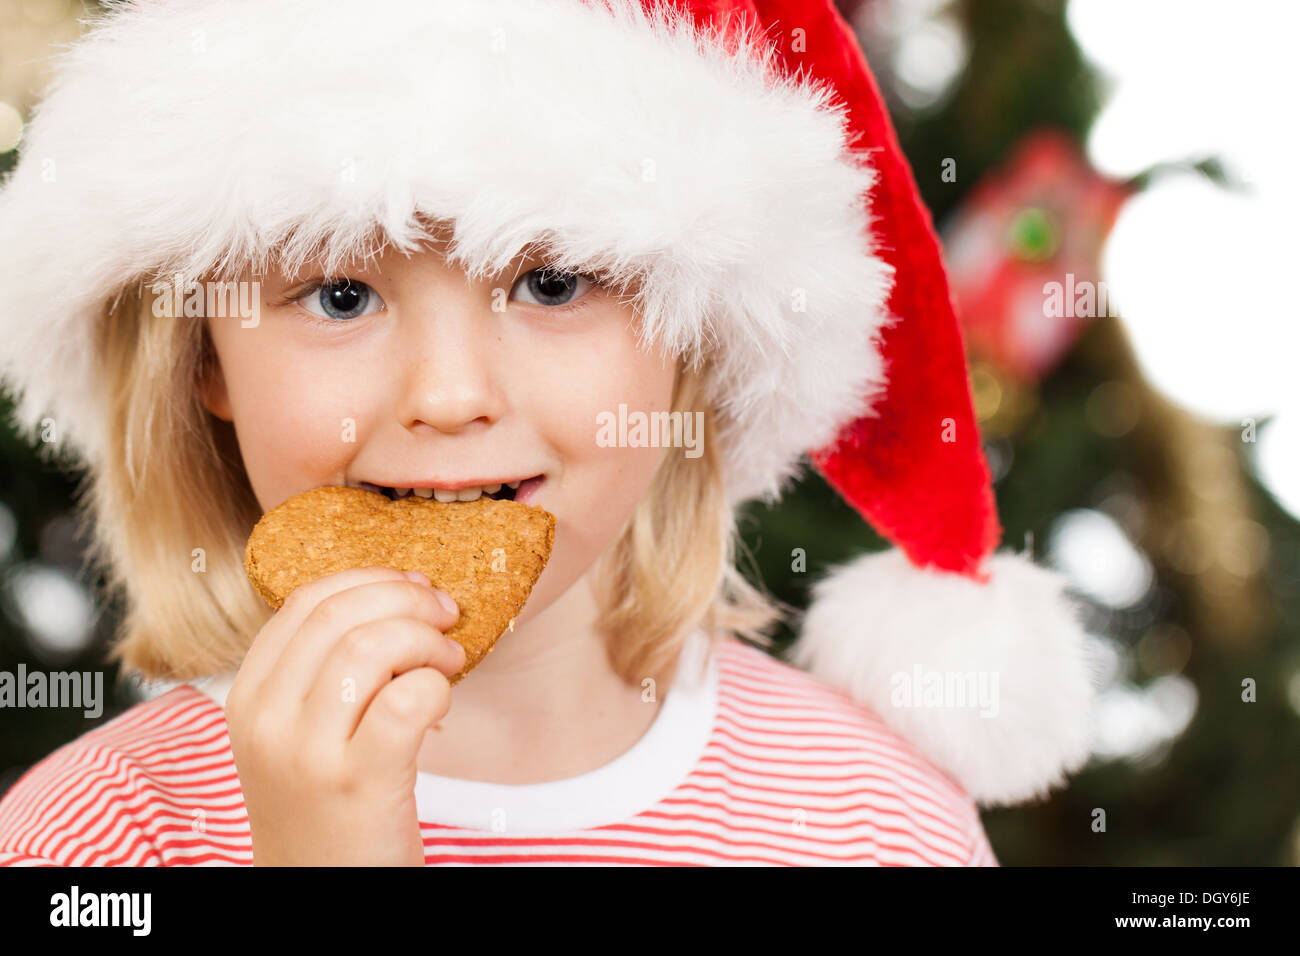 Close-up de un chico lindo vestido como Santa's helper es comer una galleta de jengibre en frente de un árbol de Navidad Foto de stock